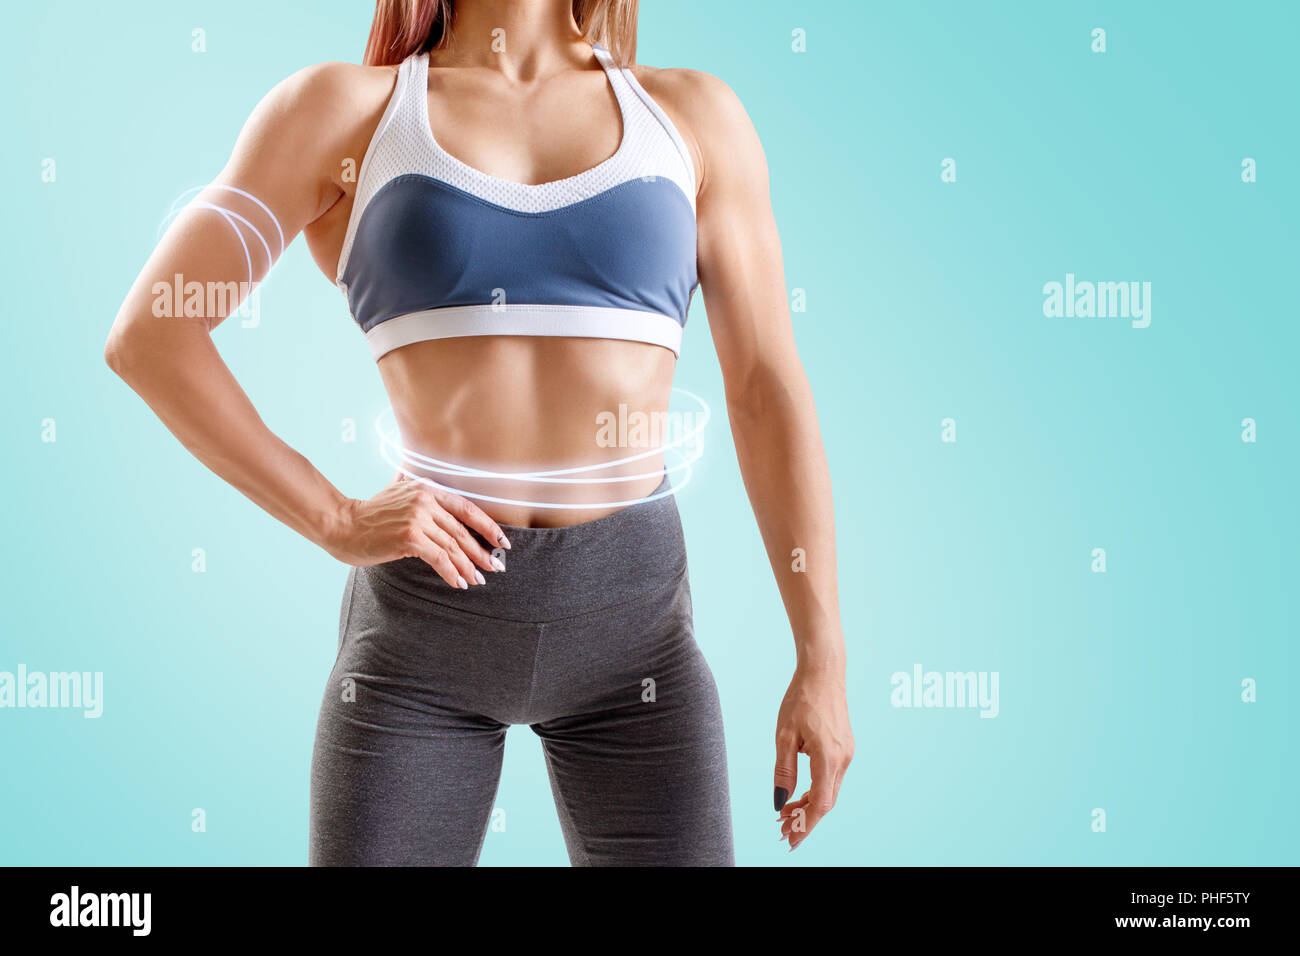 Junge Frau in Sportkleidung demonstriert ihre Muskulatur athletischer Körper. Stockfoto